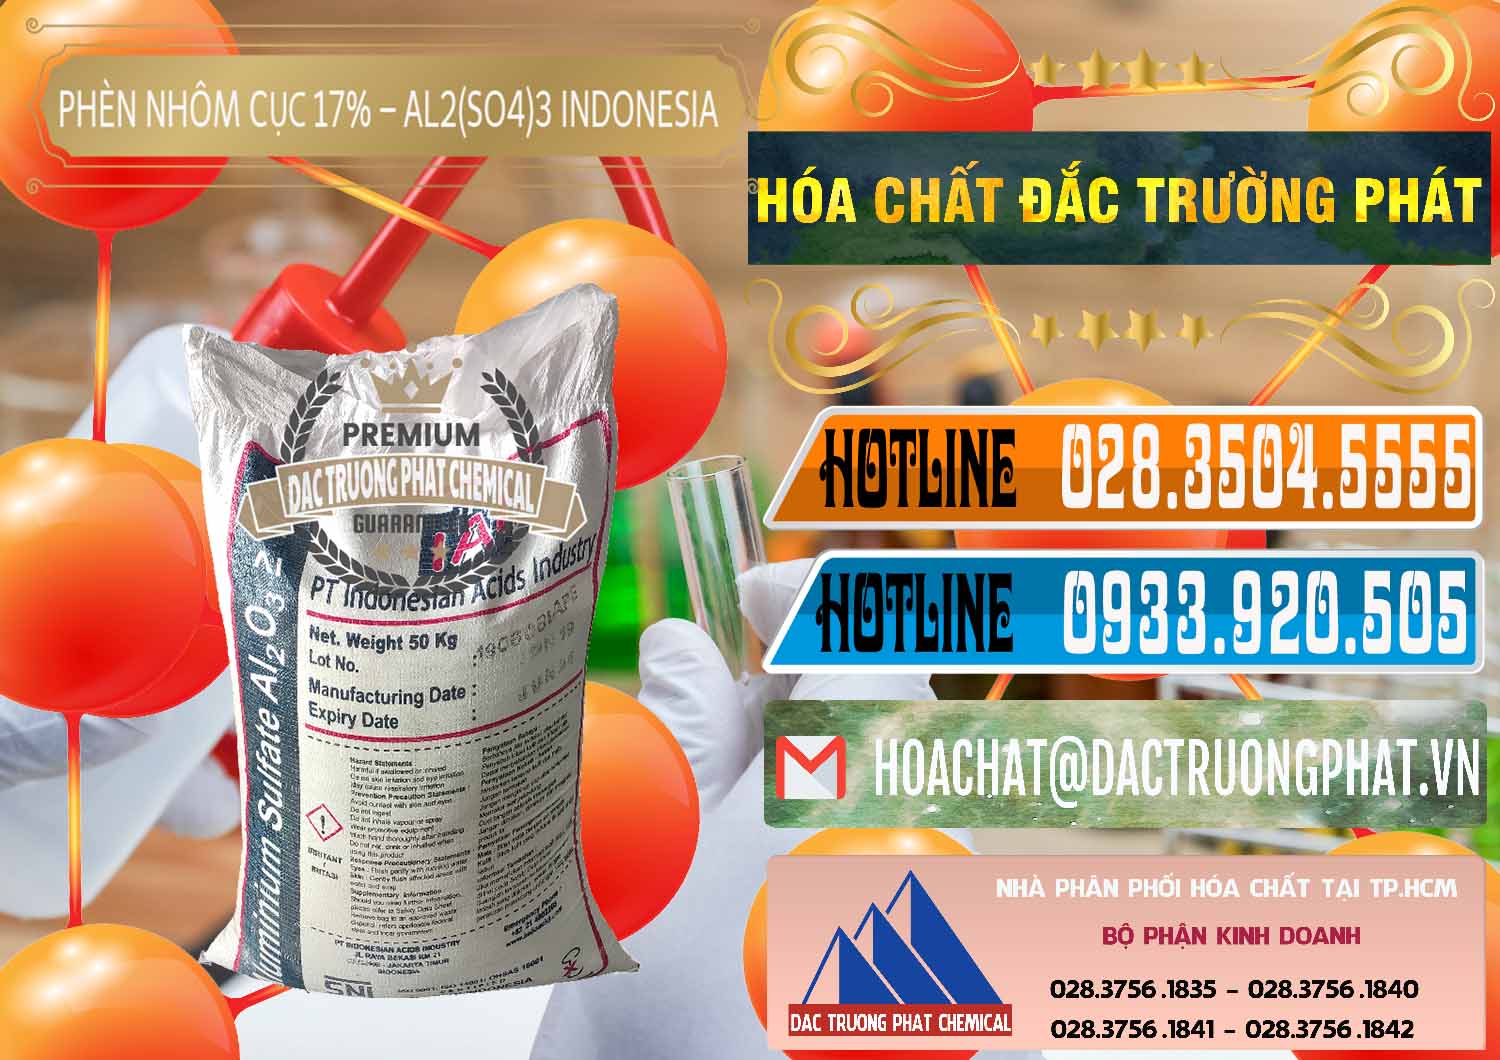 Cty nhập khẩu & bán Phèn Nhôm Cục - Al2(SO4)3 17% bao 50kg Indonesia - 0113 - Nơi cung cấp ( nhập khẩu ) hóa chất tại TP.HCM - stmp.net